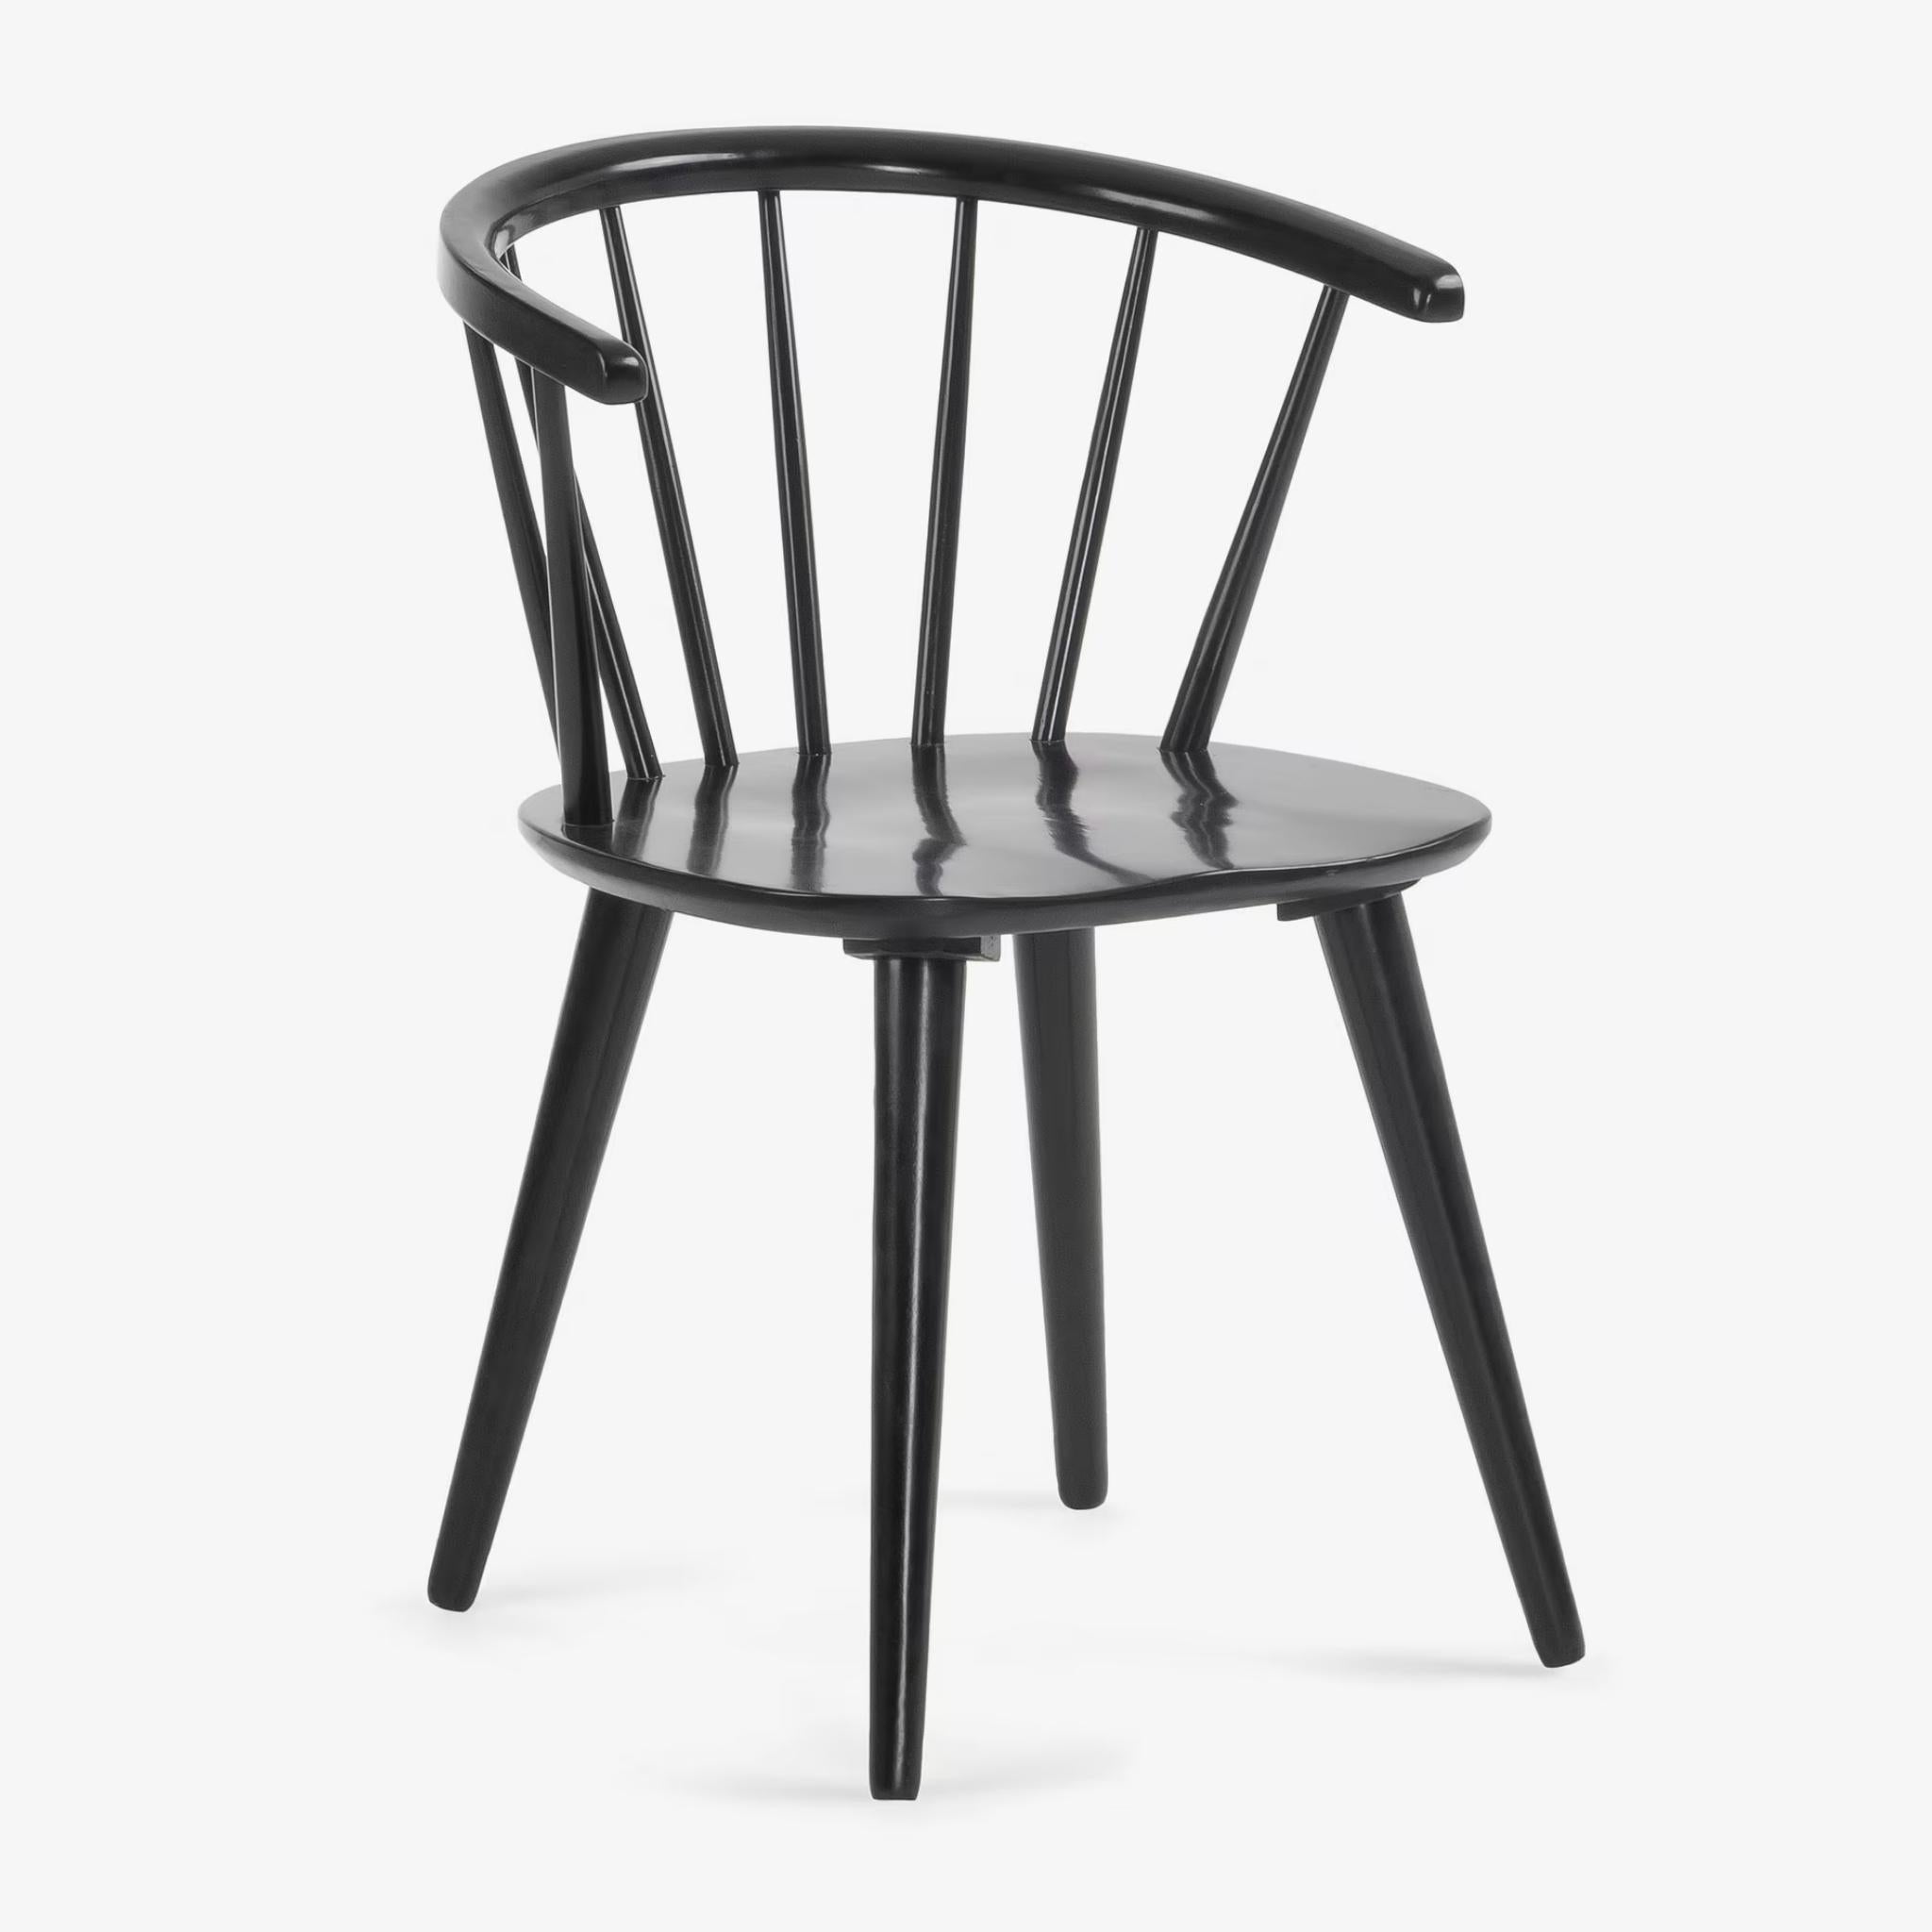 Kave Home Trise Stuhl - Farbe Schwarz - SKU #CC0219M01 - weißer Hintergrund front